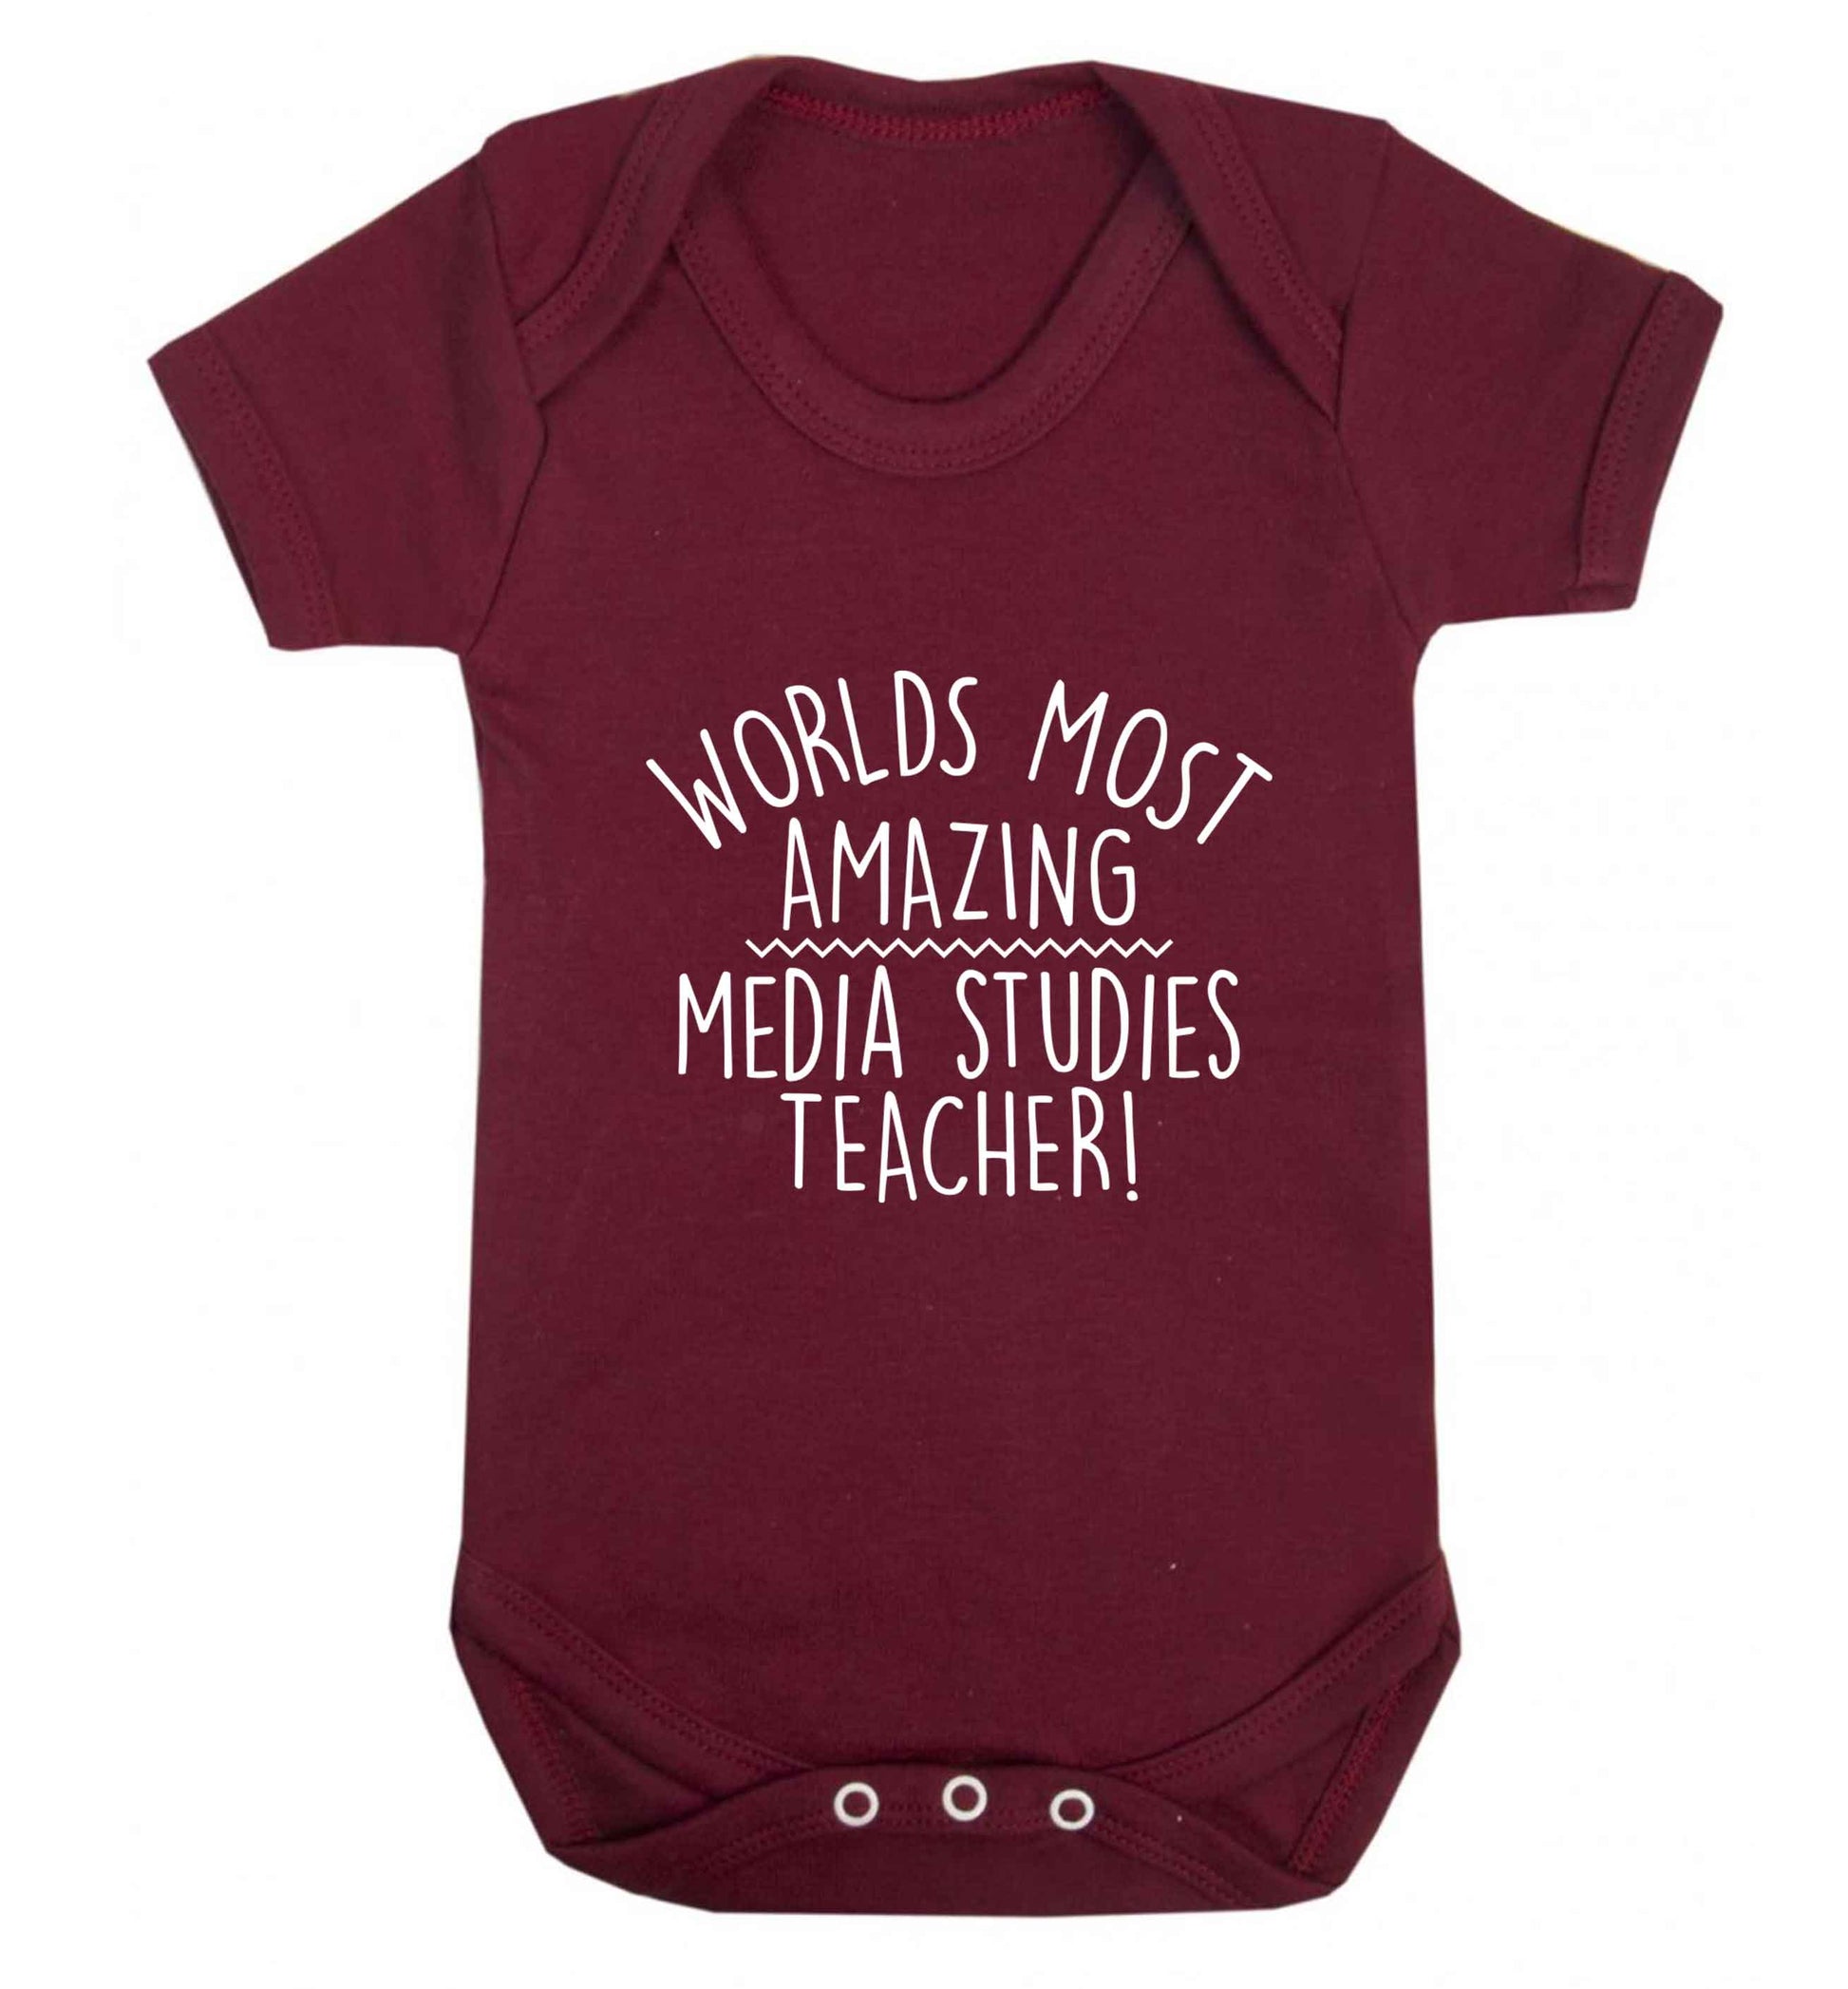 Worlds most amazing media studies teacher baby vest maroon 18-24 months